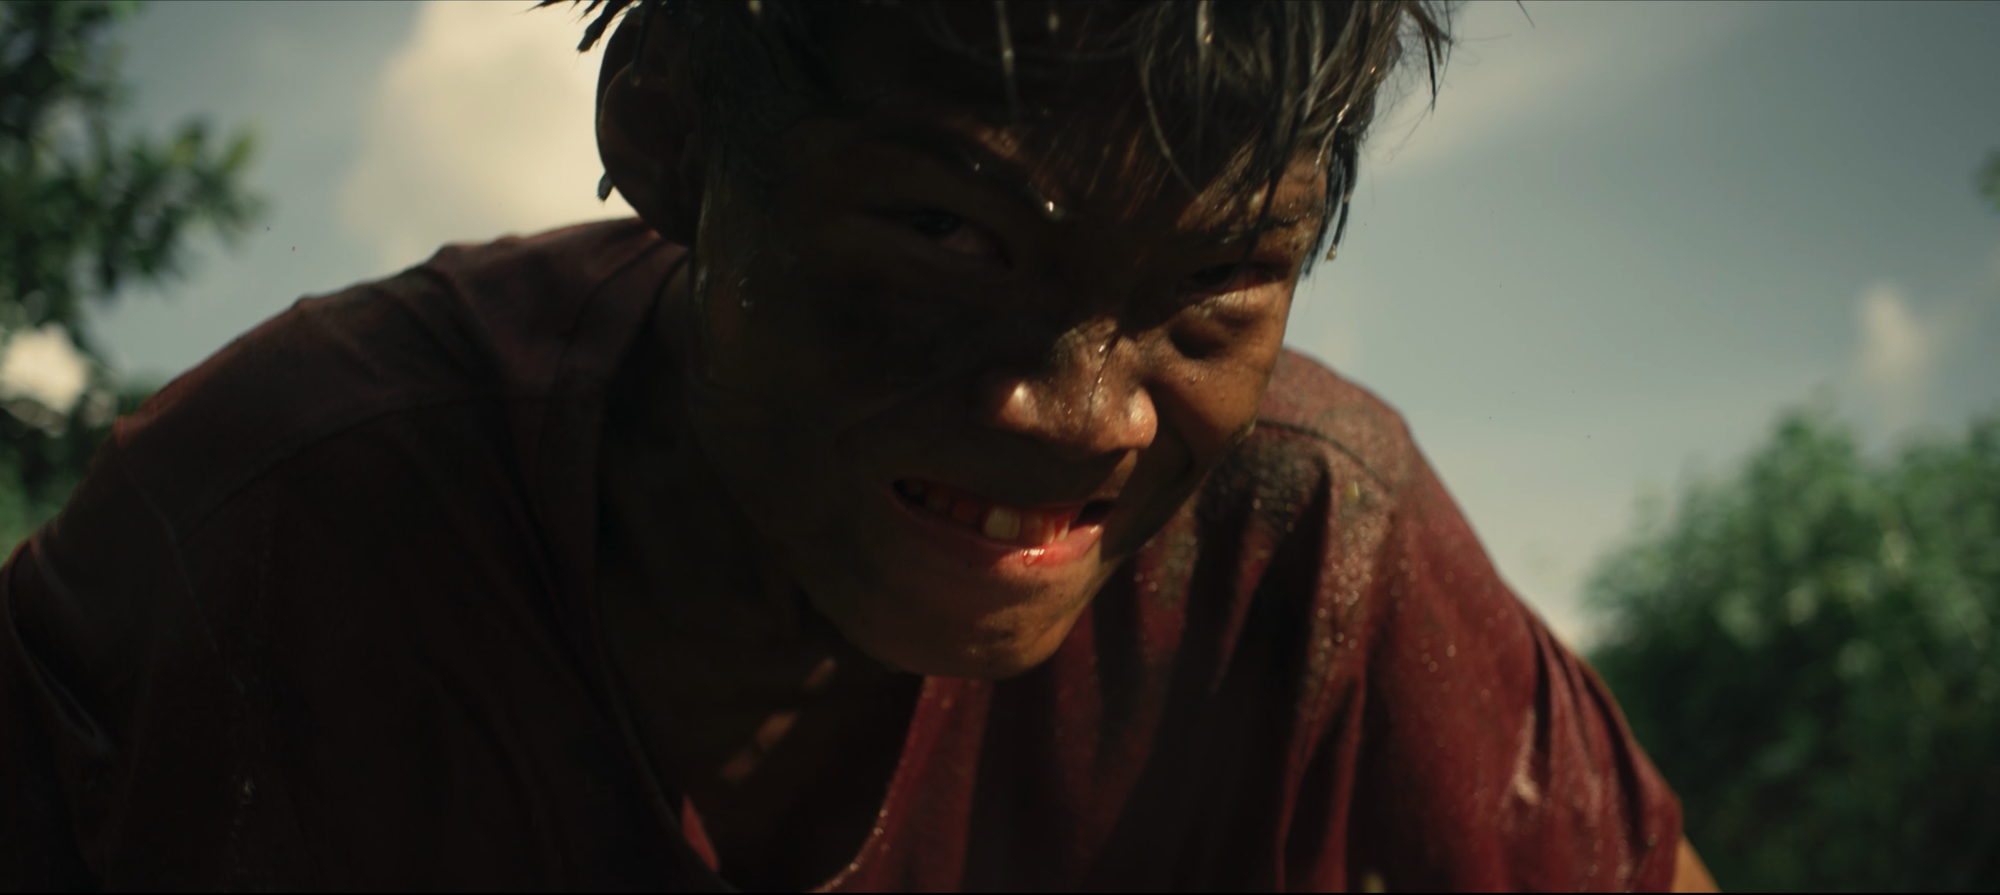 Trailer kịch tính của “Ròm” nhận nhiều lời khen - Ảnh 6.